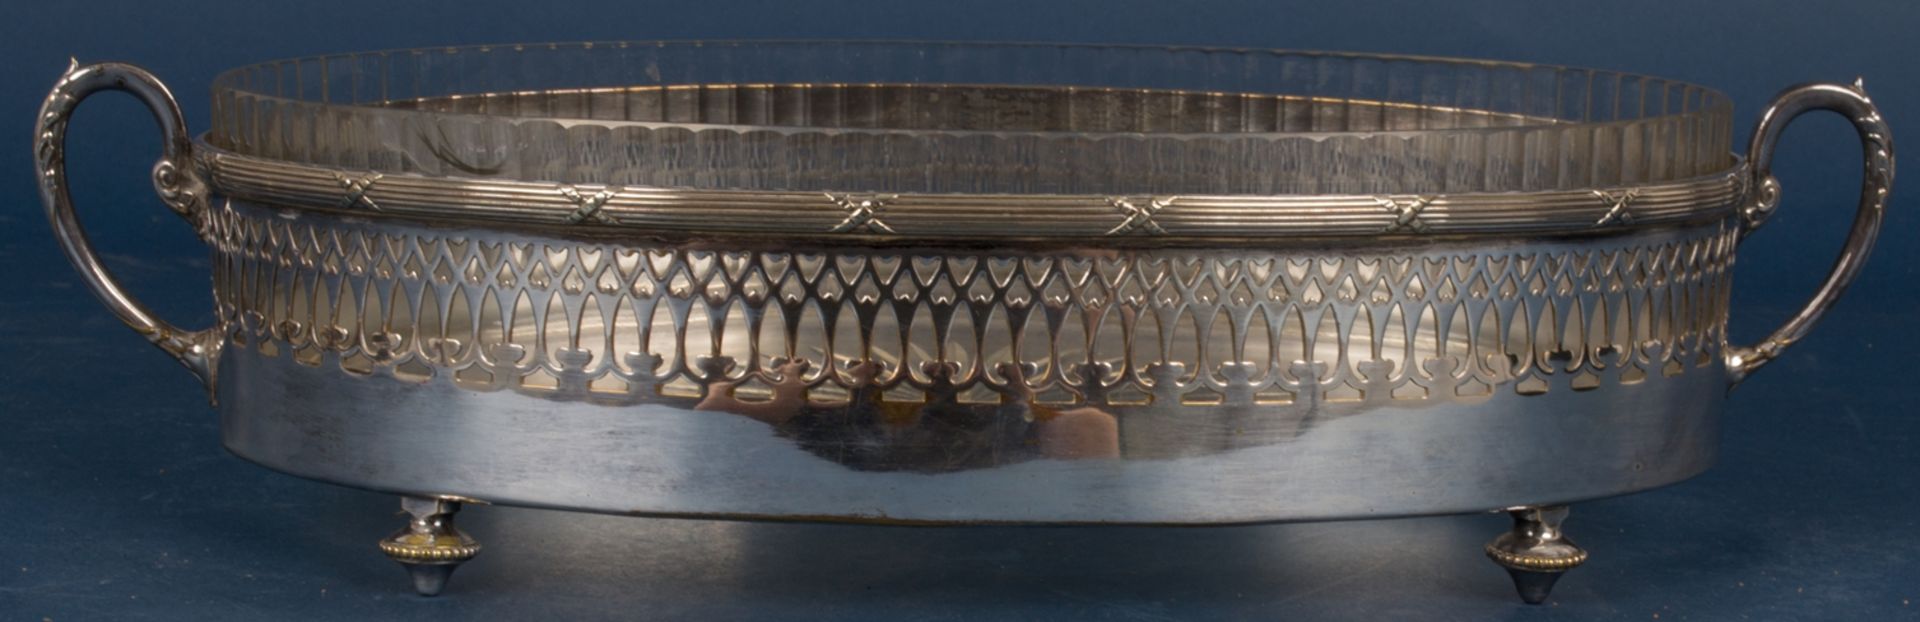 Ovale Jardiniere mit orig. Glaseinsatz (gechipt), Versilberung stellenweise verputzt. Länge ca. 37 - Image 2 of 7